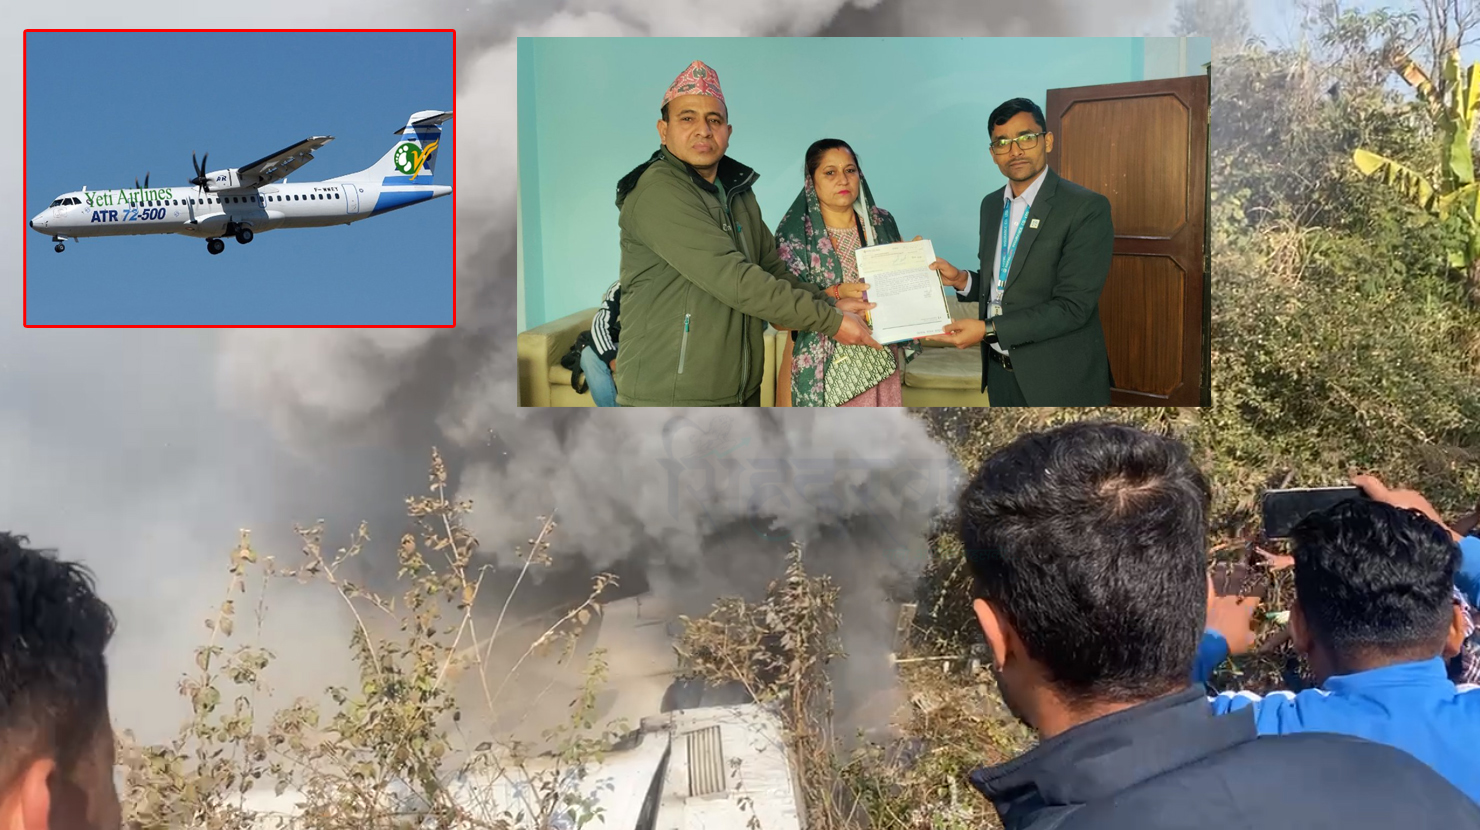 यति एयरलाइन्स दुर्घटनाका मृतकलाई १ करोड १ लाख, नेपाल लाइफद्वारा परिवारलाई दावी भुक्तानी